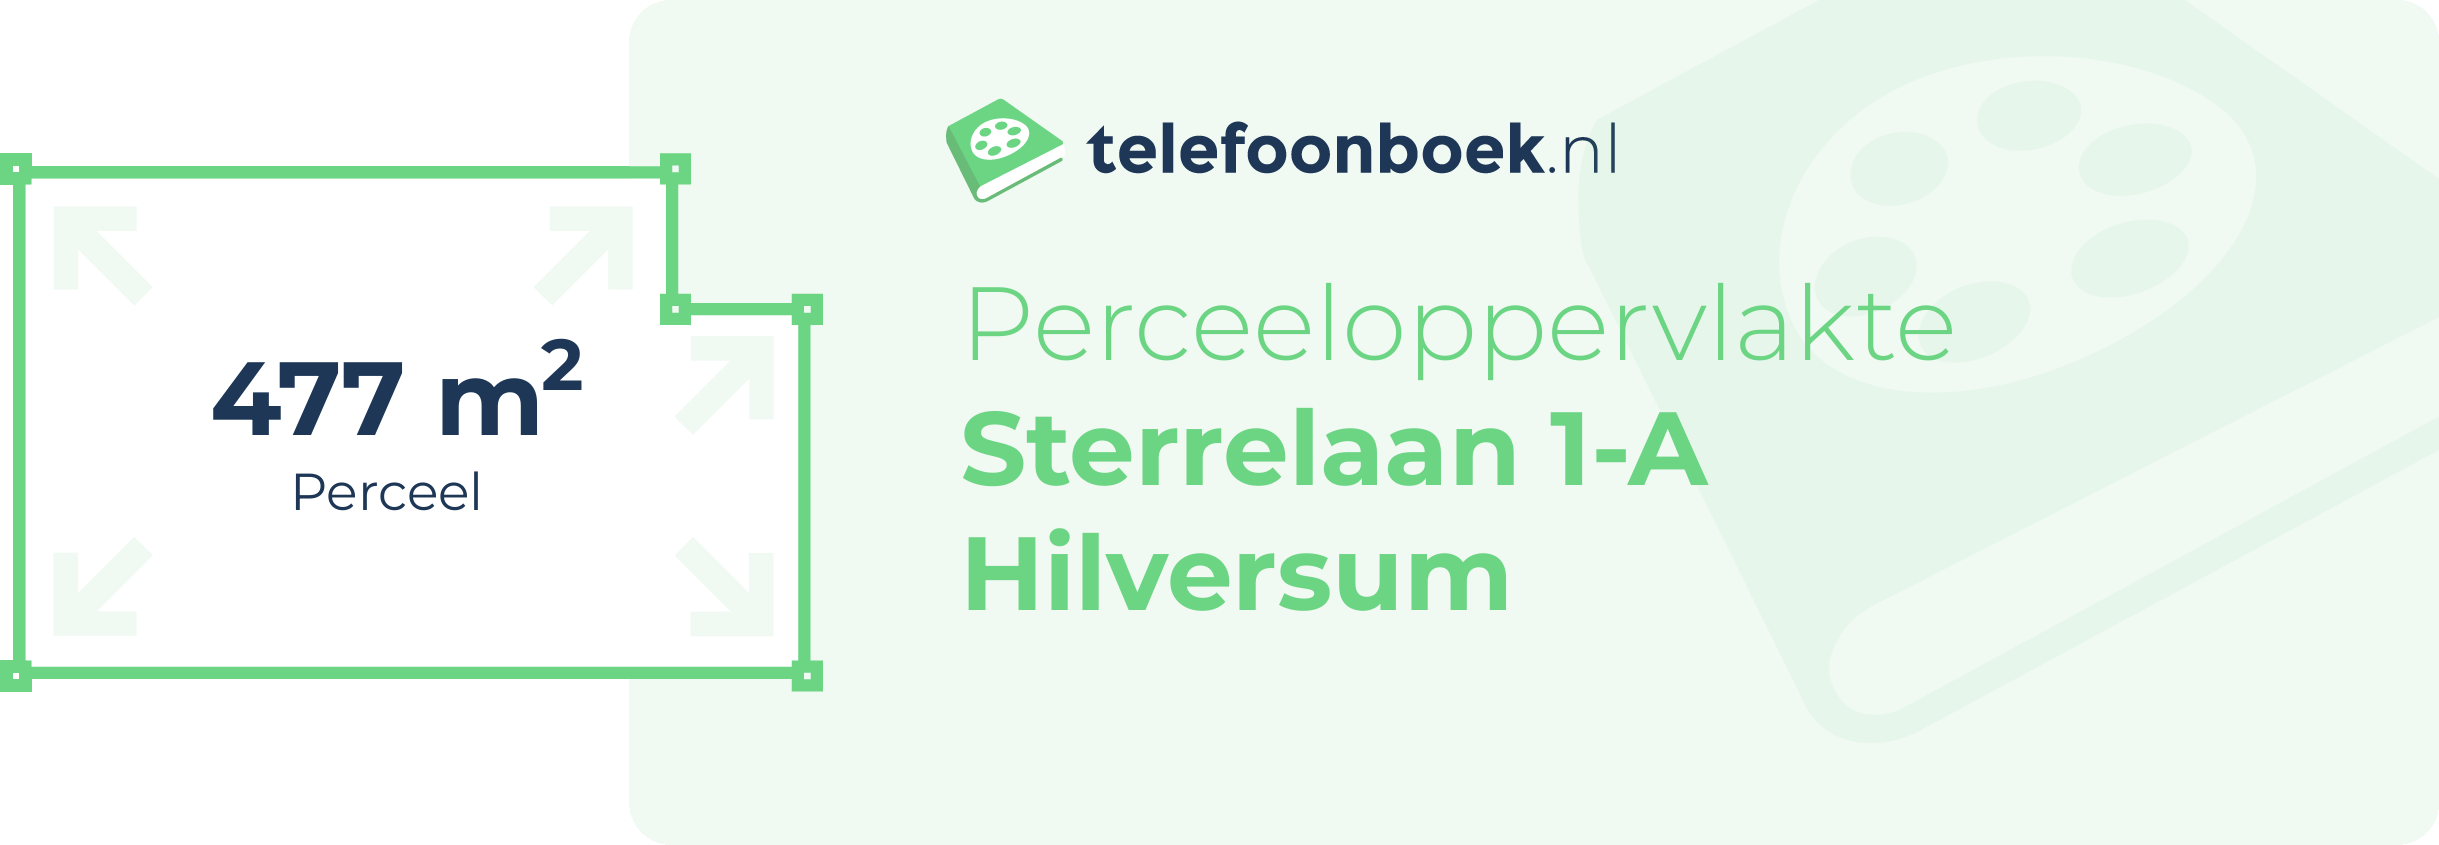 Perceeloppervlakte Sterrelaan 1-A Hilversum